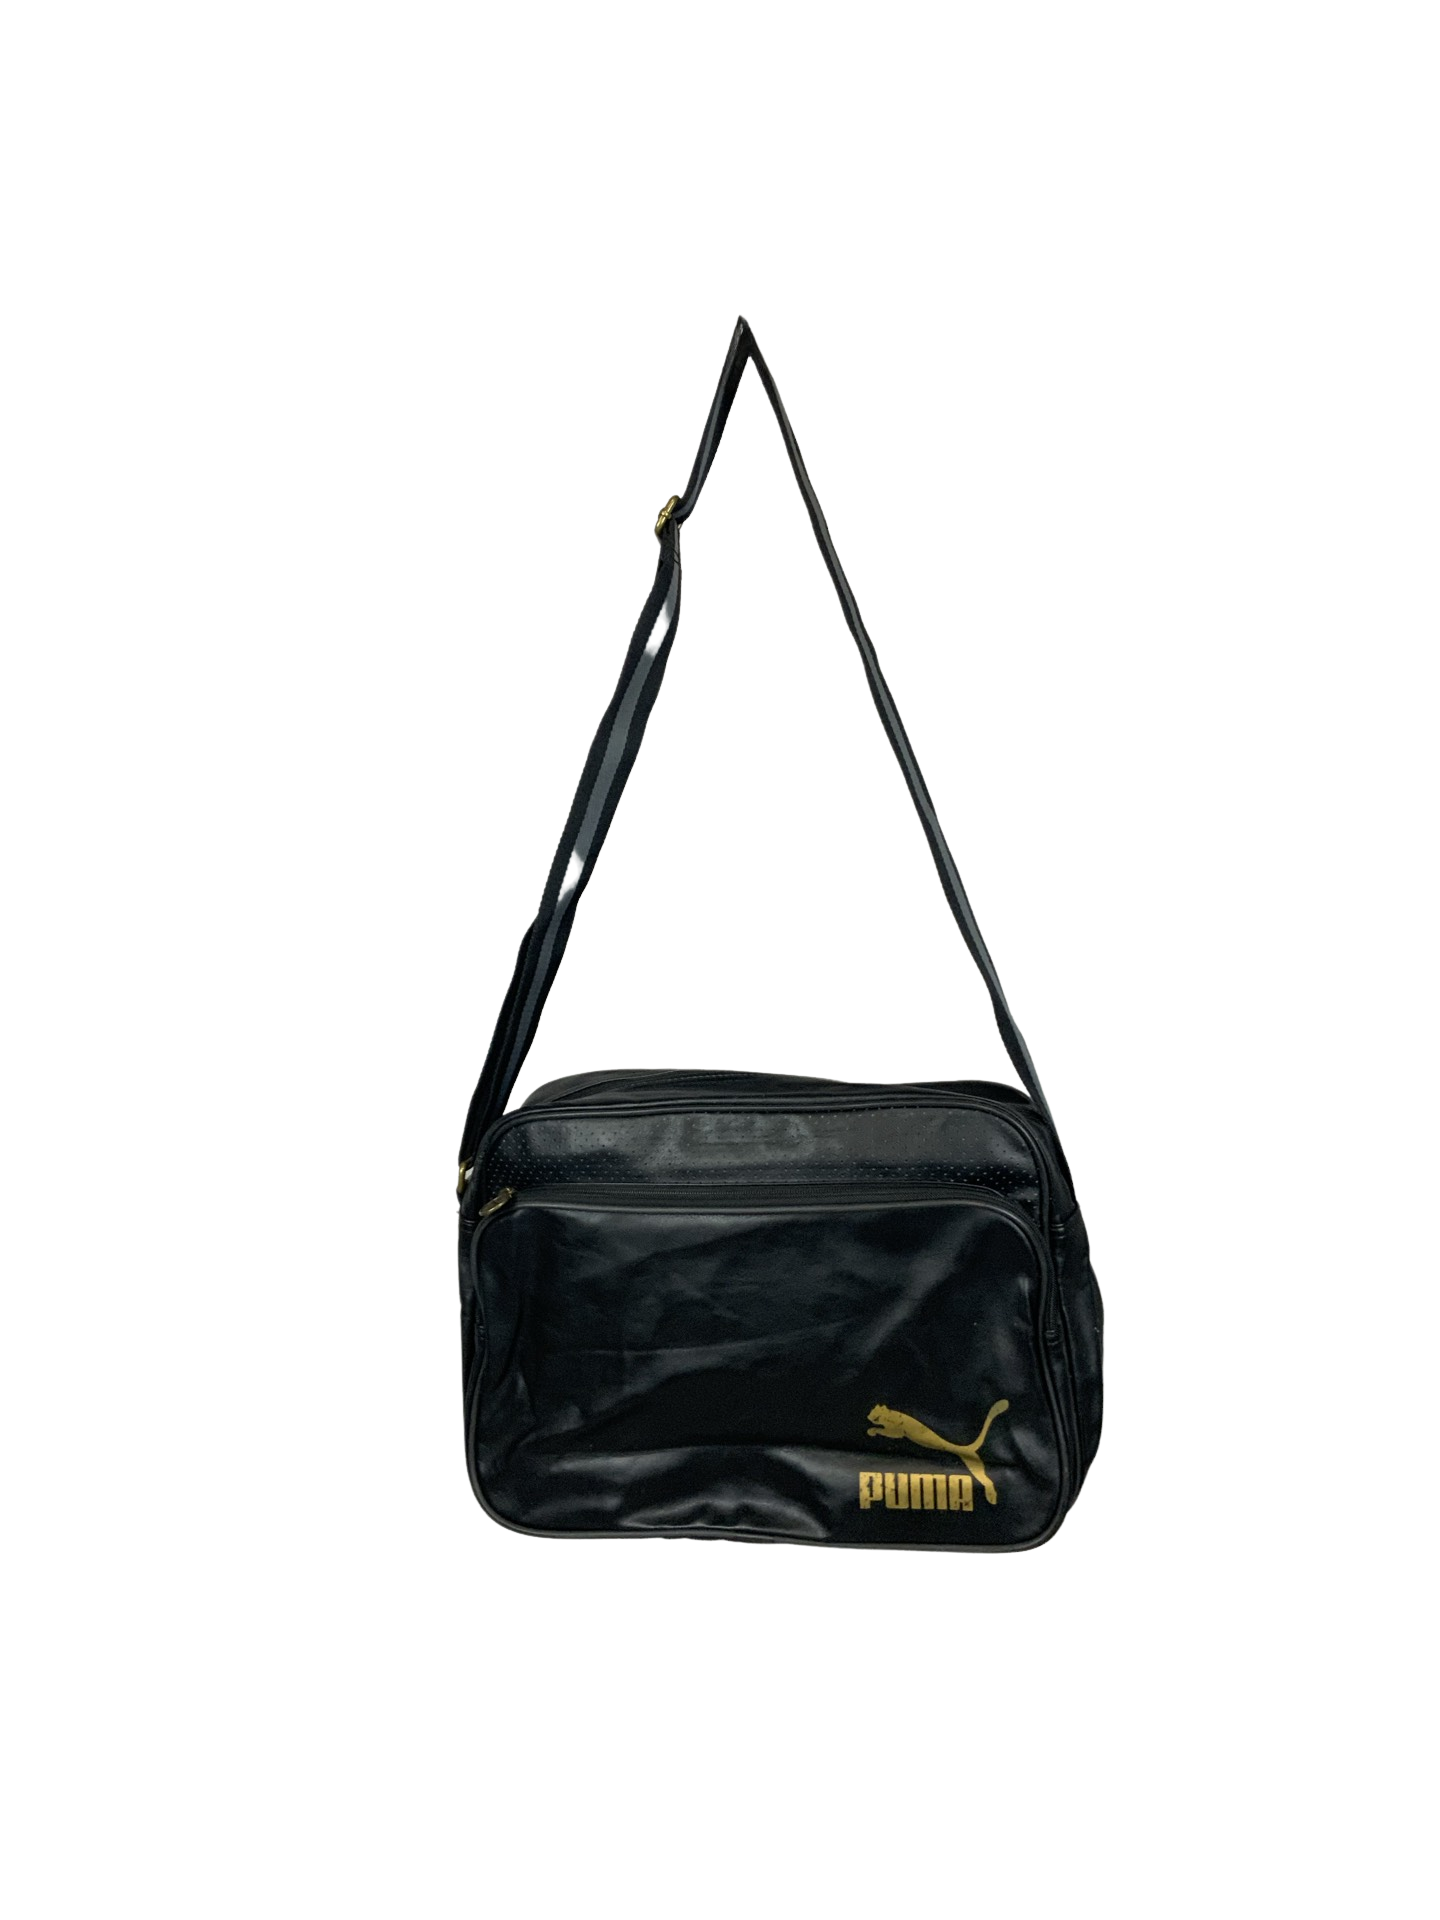 Vintage Black Gold Puma Sports Bag